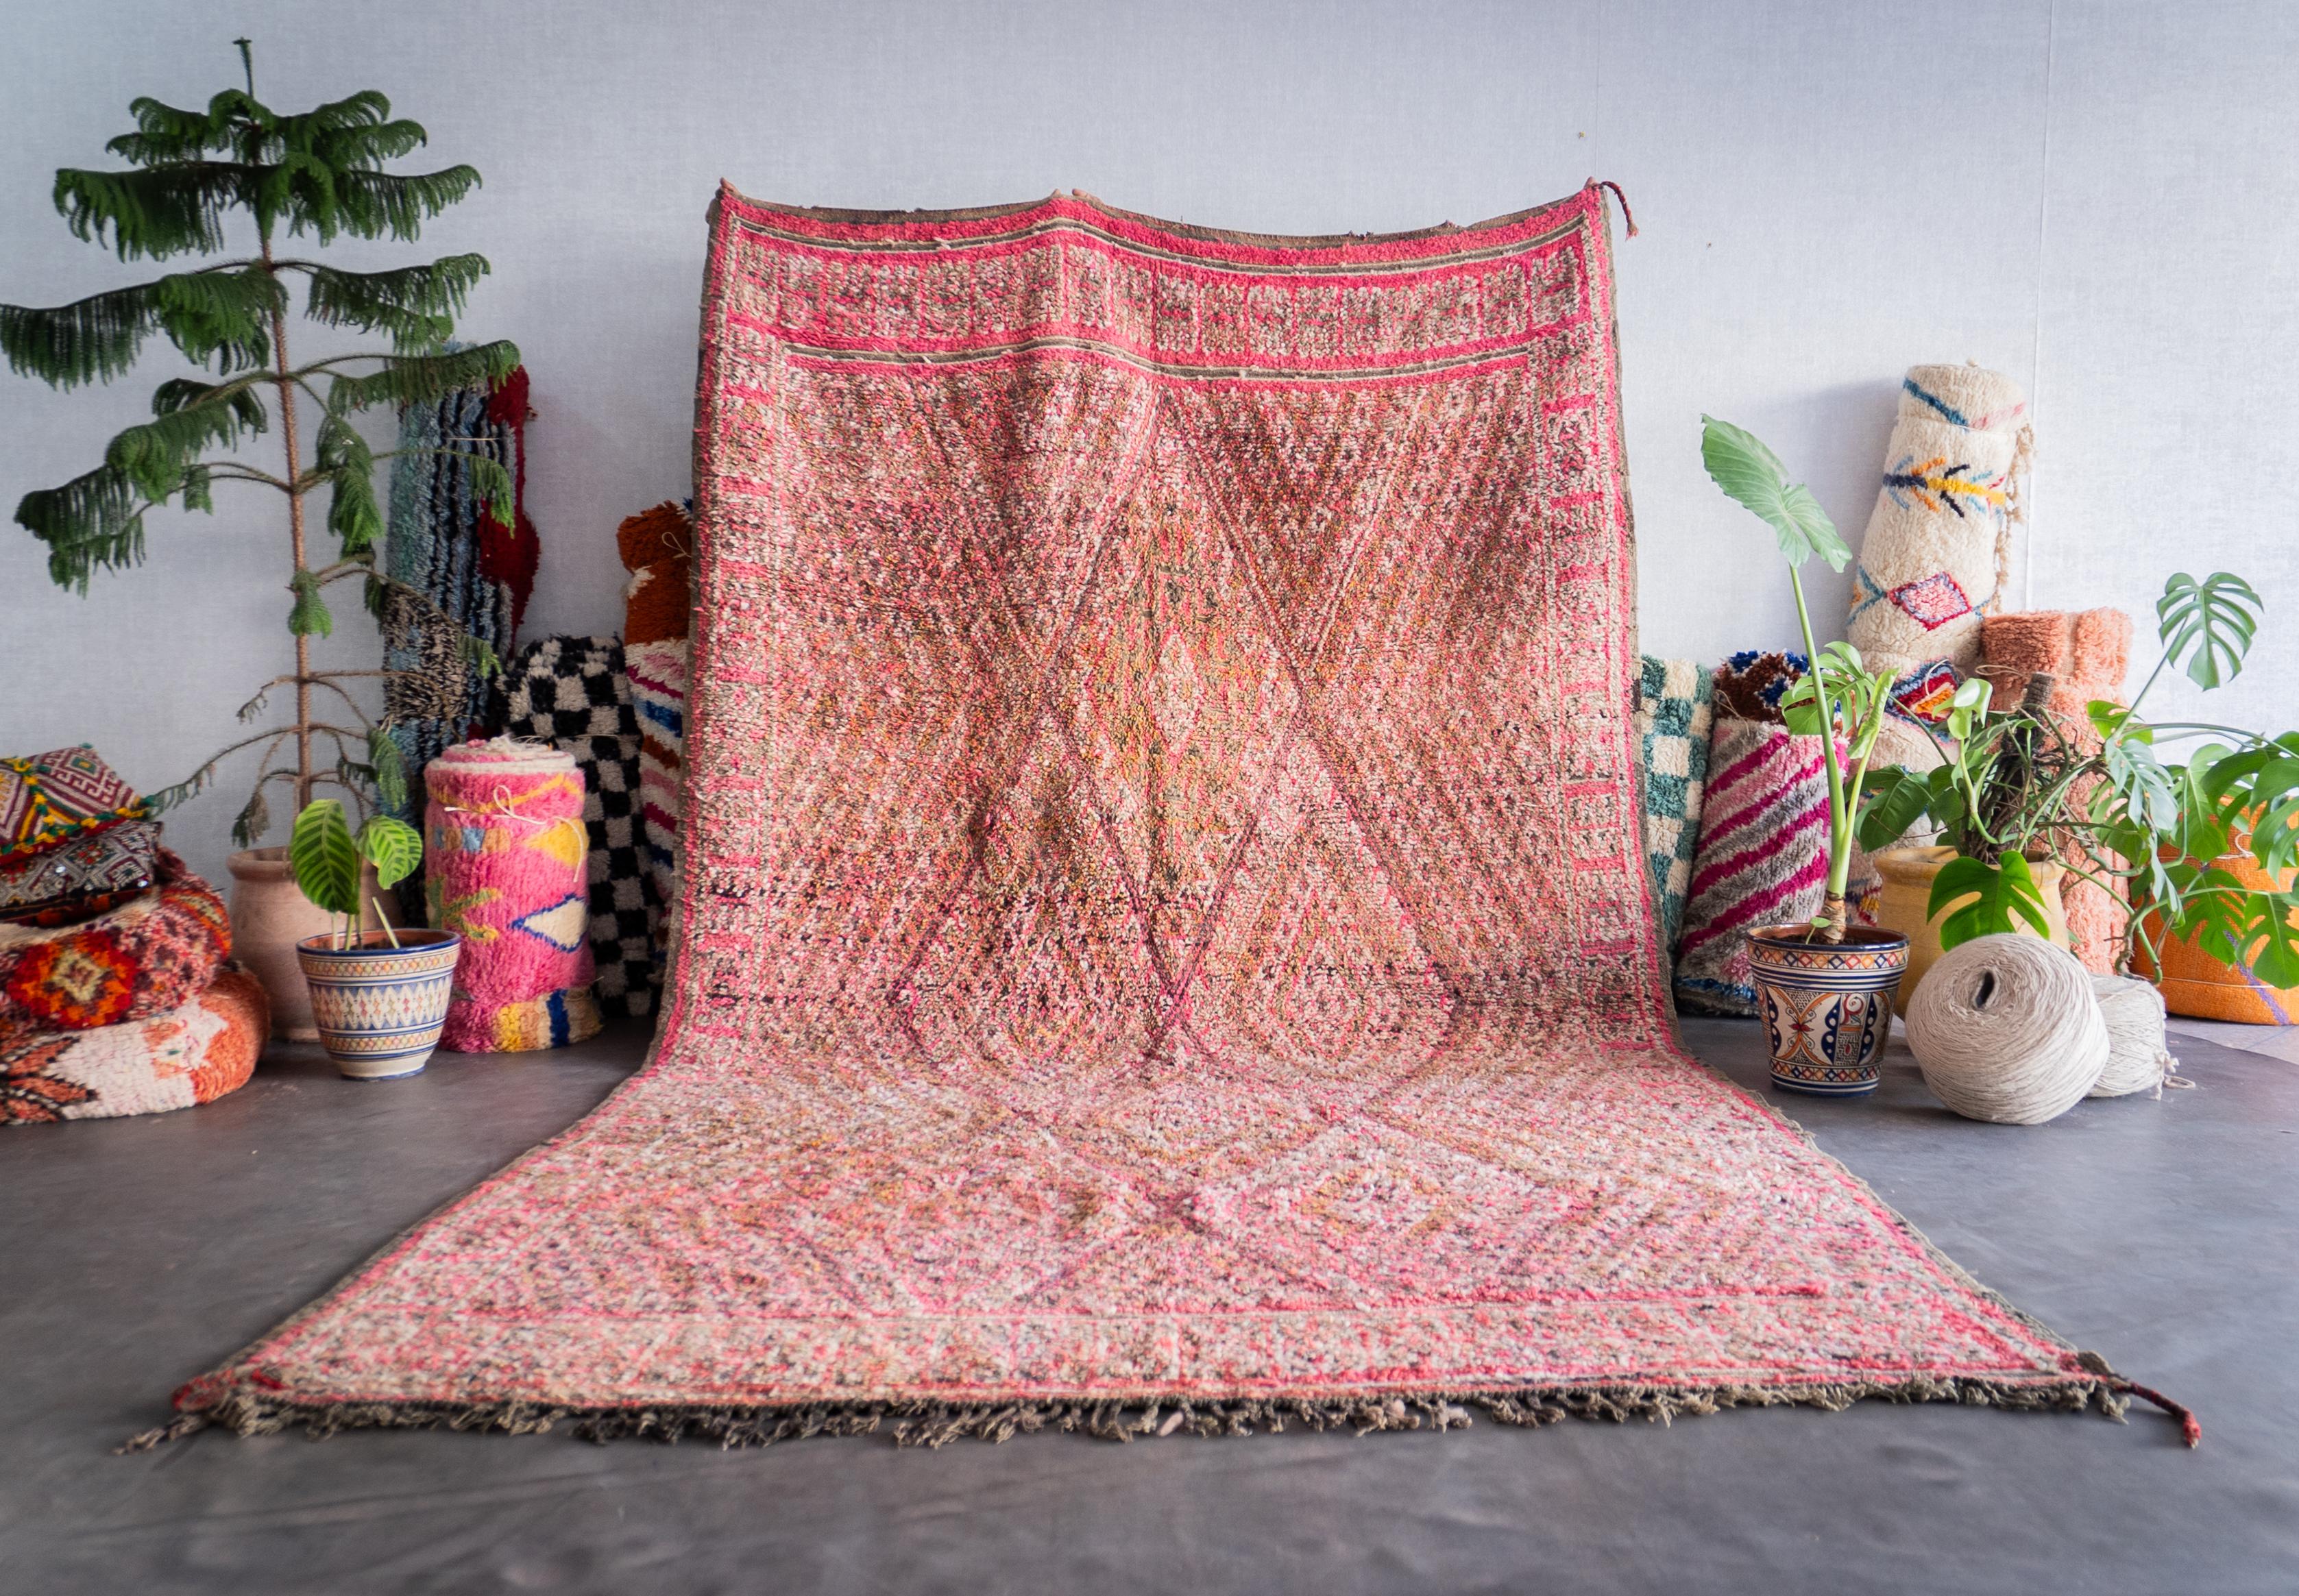 Découvrez le riche héritage tissé dans notre tapis vintage marocain rose. Fabriqué à la main par des artisans qualifiés selon des techniques éprouvées, chaque tapis berbère est un récit unique qui fait écho à la tapisserie culturelle du Maroc. Avec